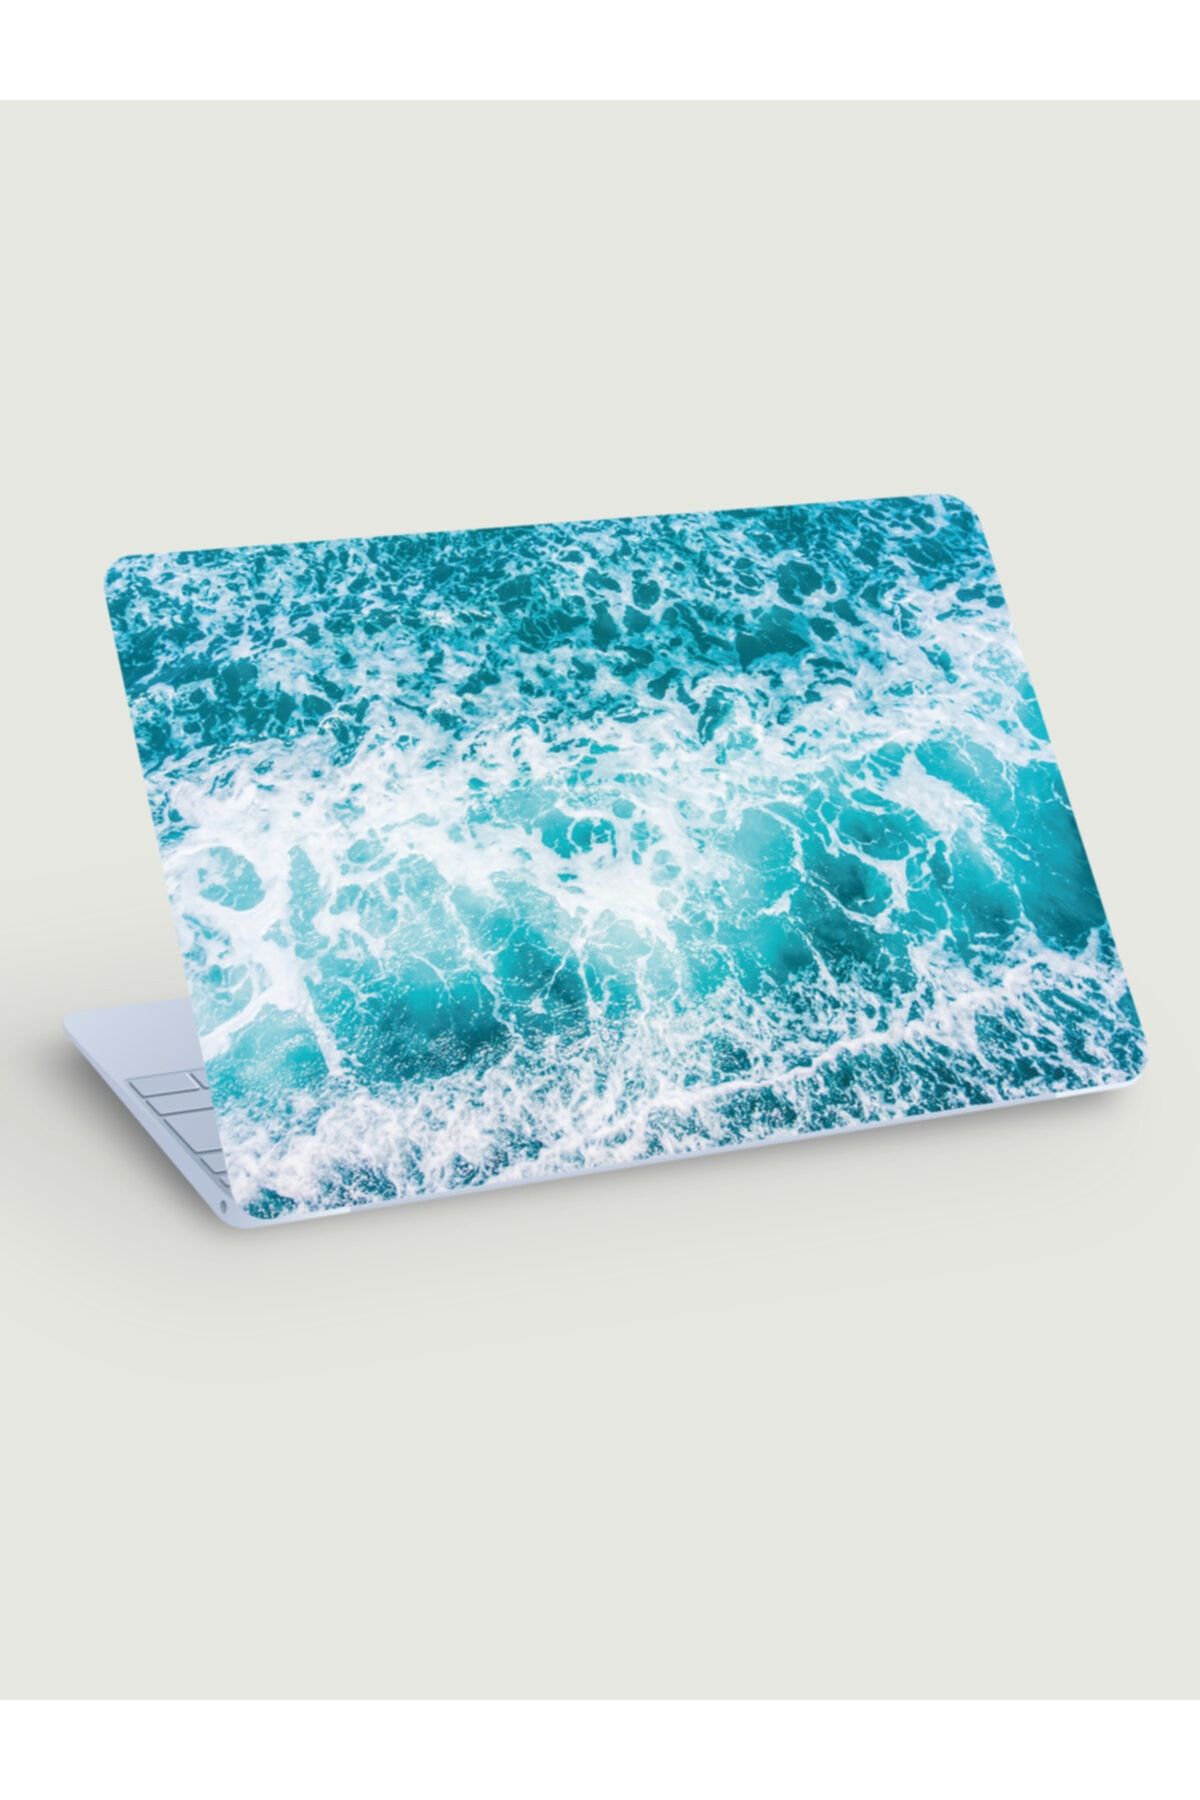 akcepazar Dalgalı Deniz Temalı Dizüstü Bilgisayar Sticker